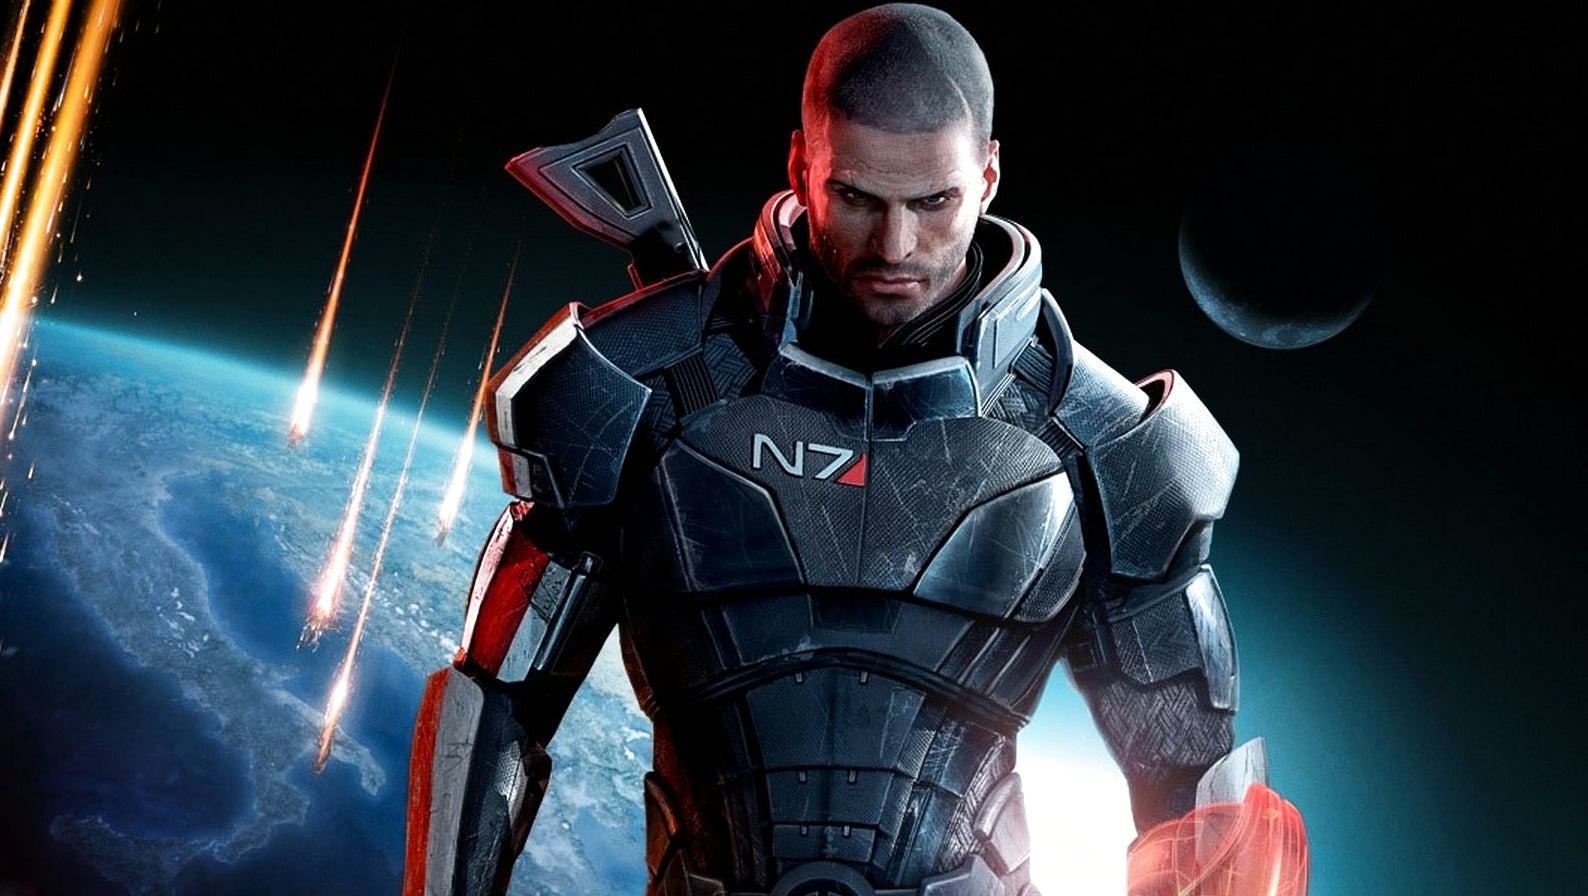 Bilder zu Mass Effect 3 - Komplettlösung, Tipps und Tricks